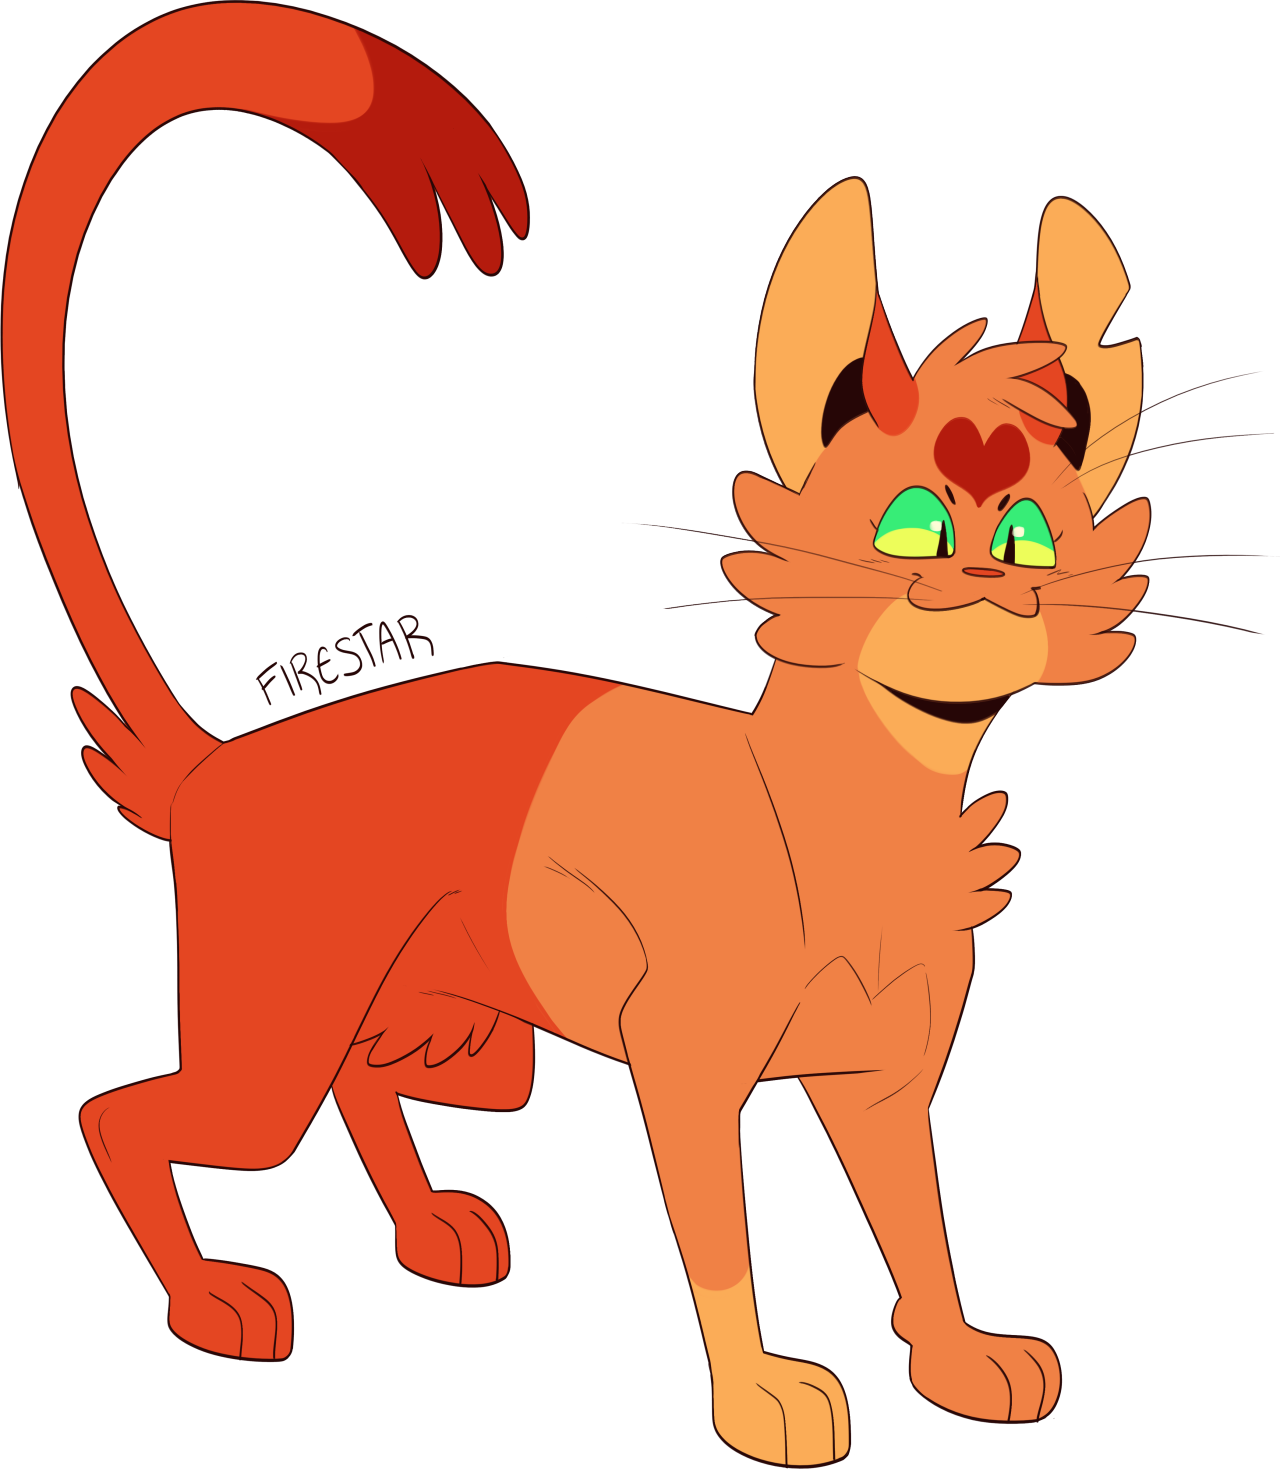 Firestar - prophecy cat : r/WarriorCats